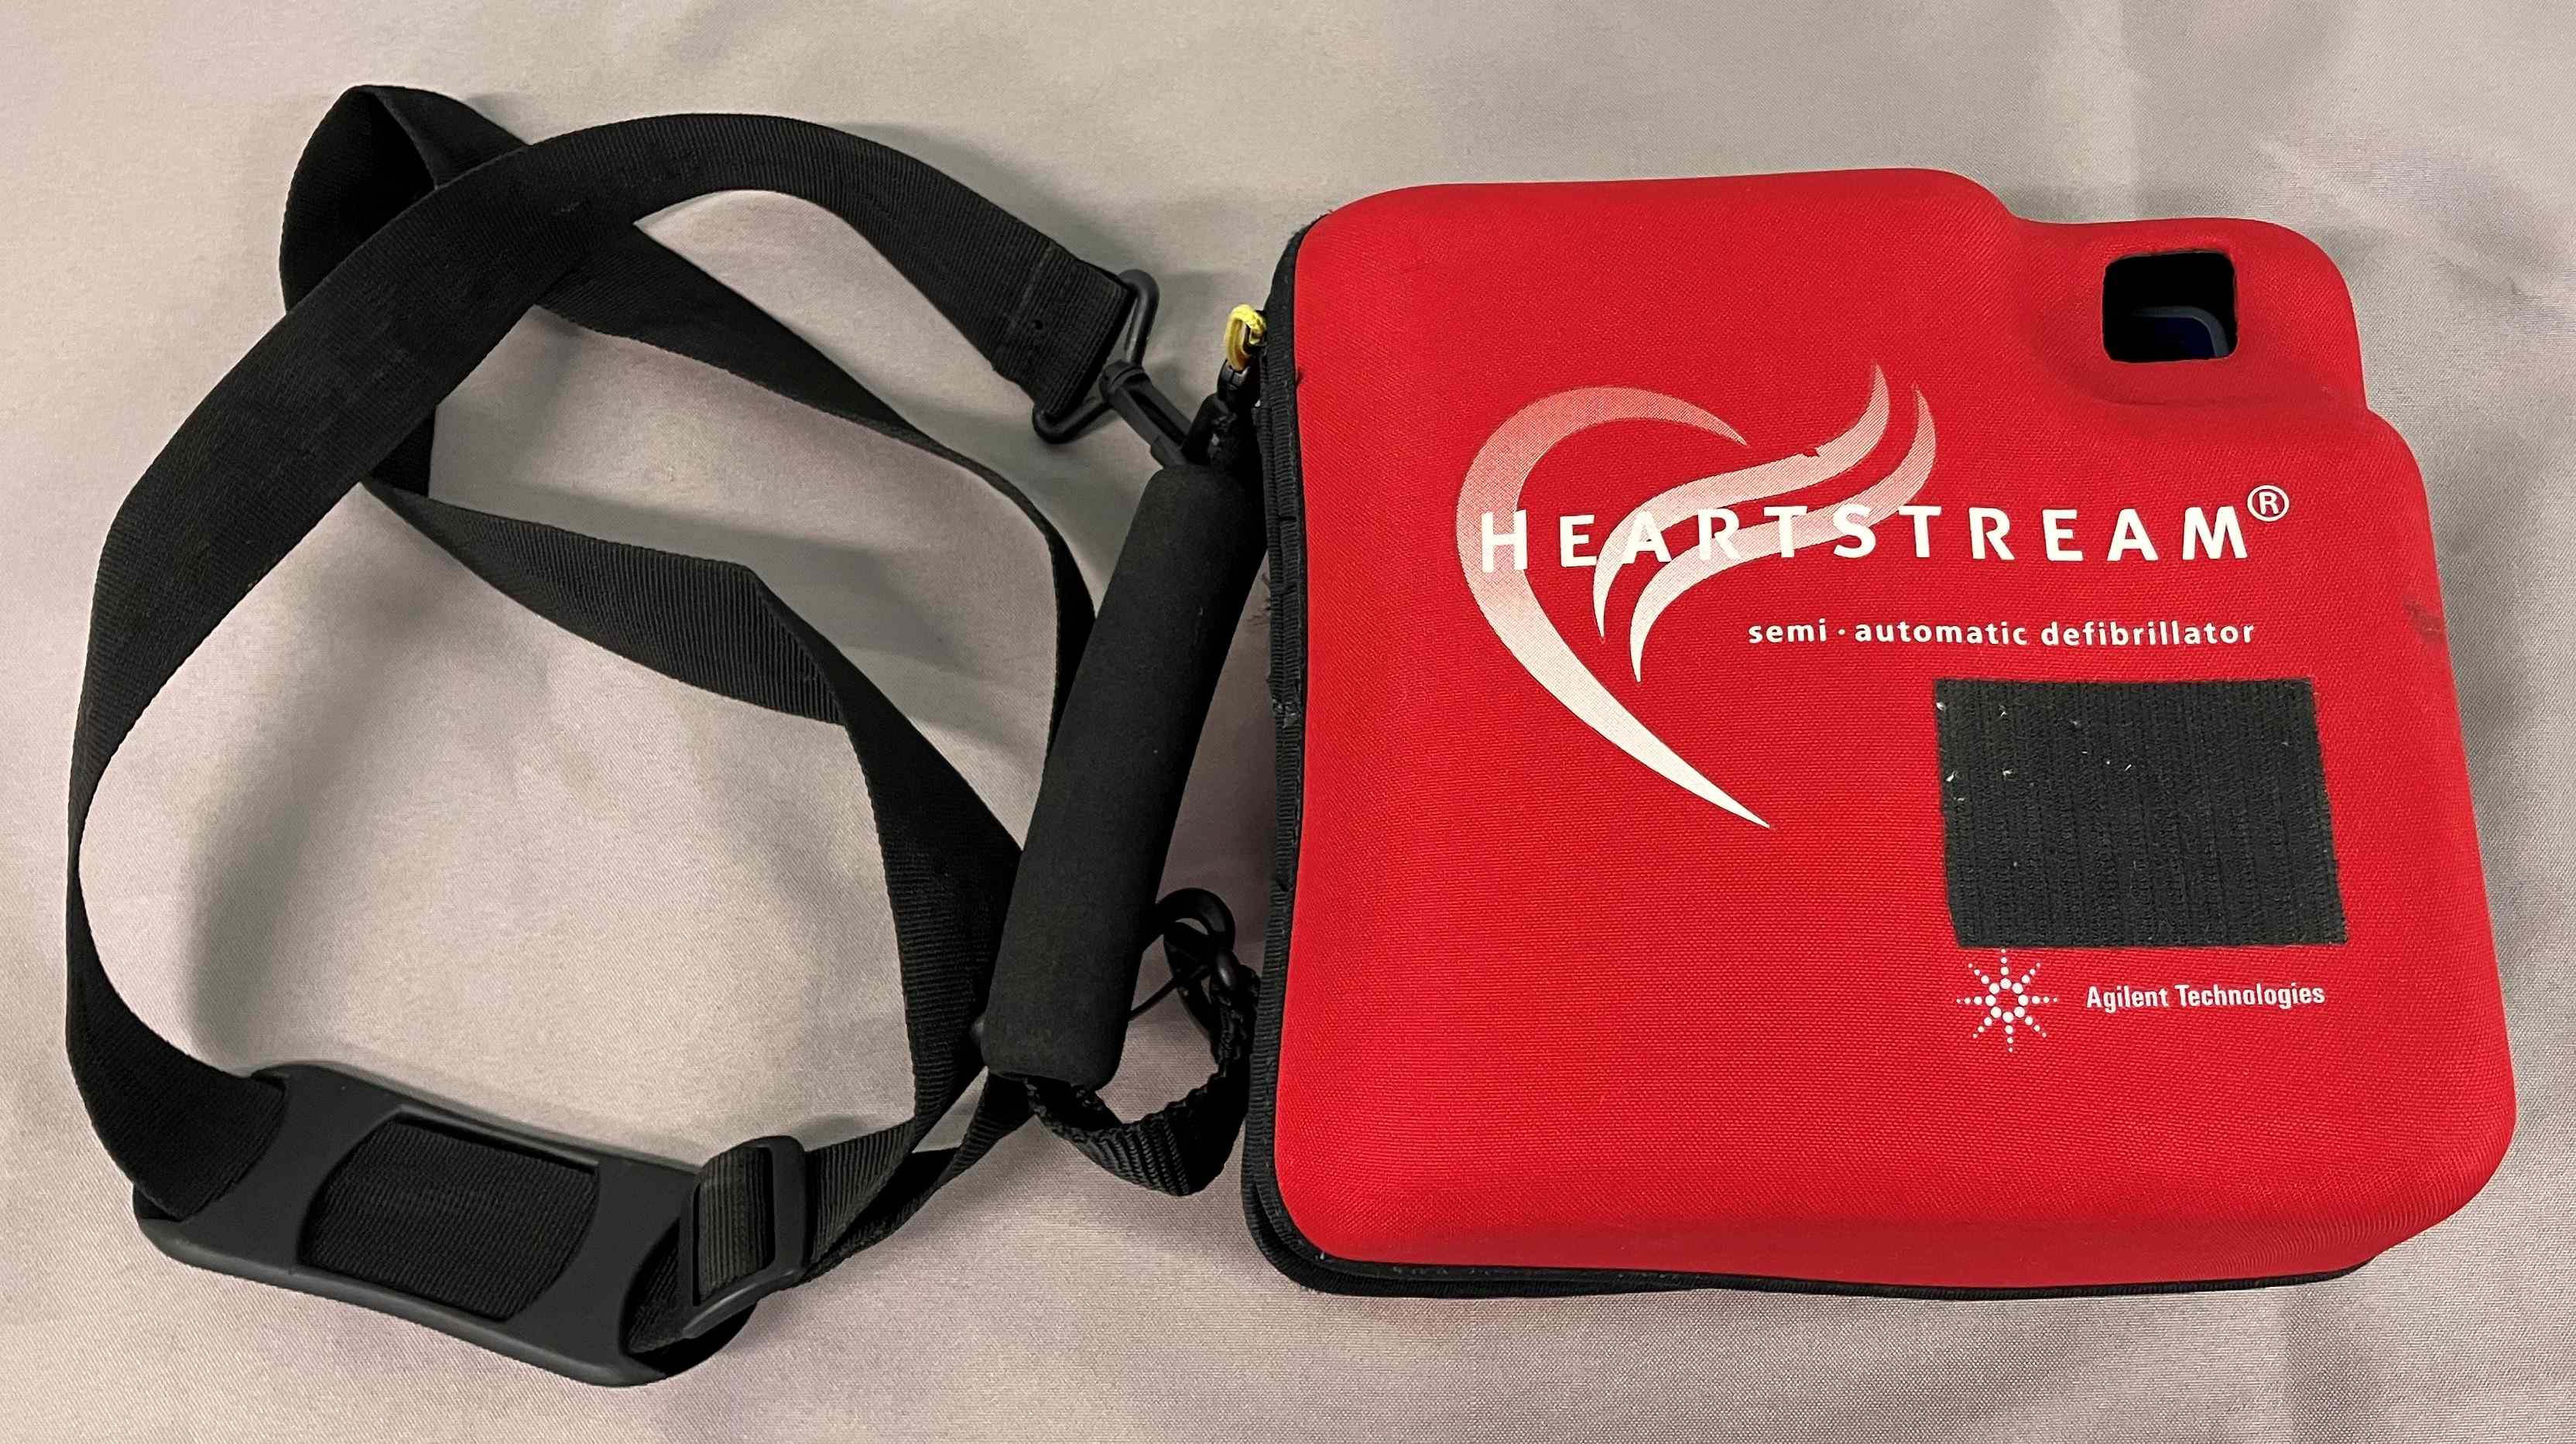 Agilent M3861A Heartstream FR2 Semi-Automatic Defibrillator